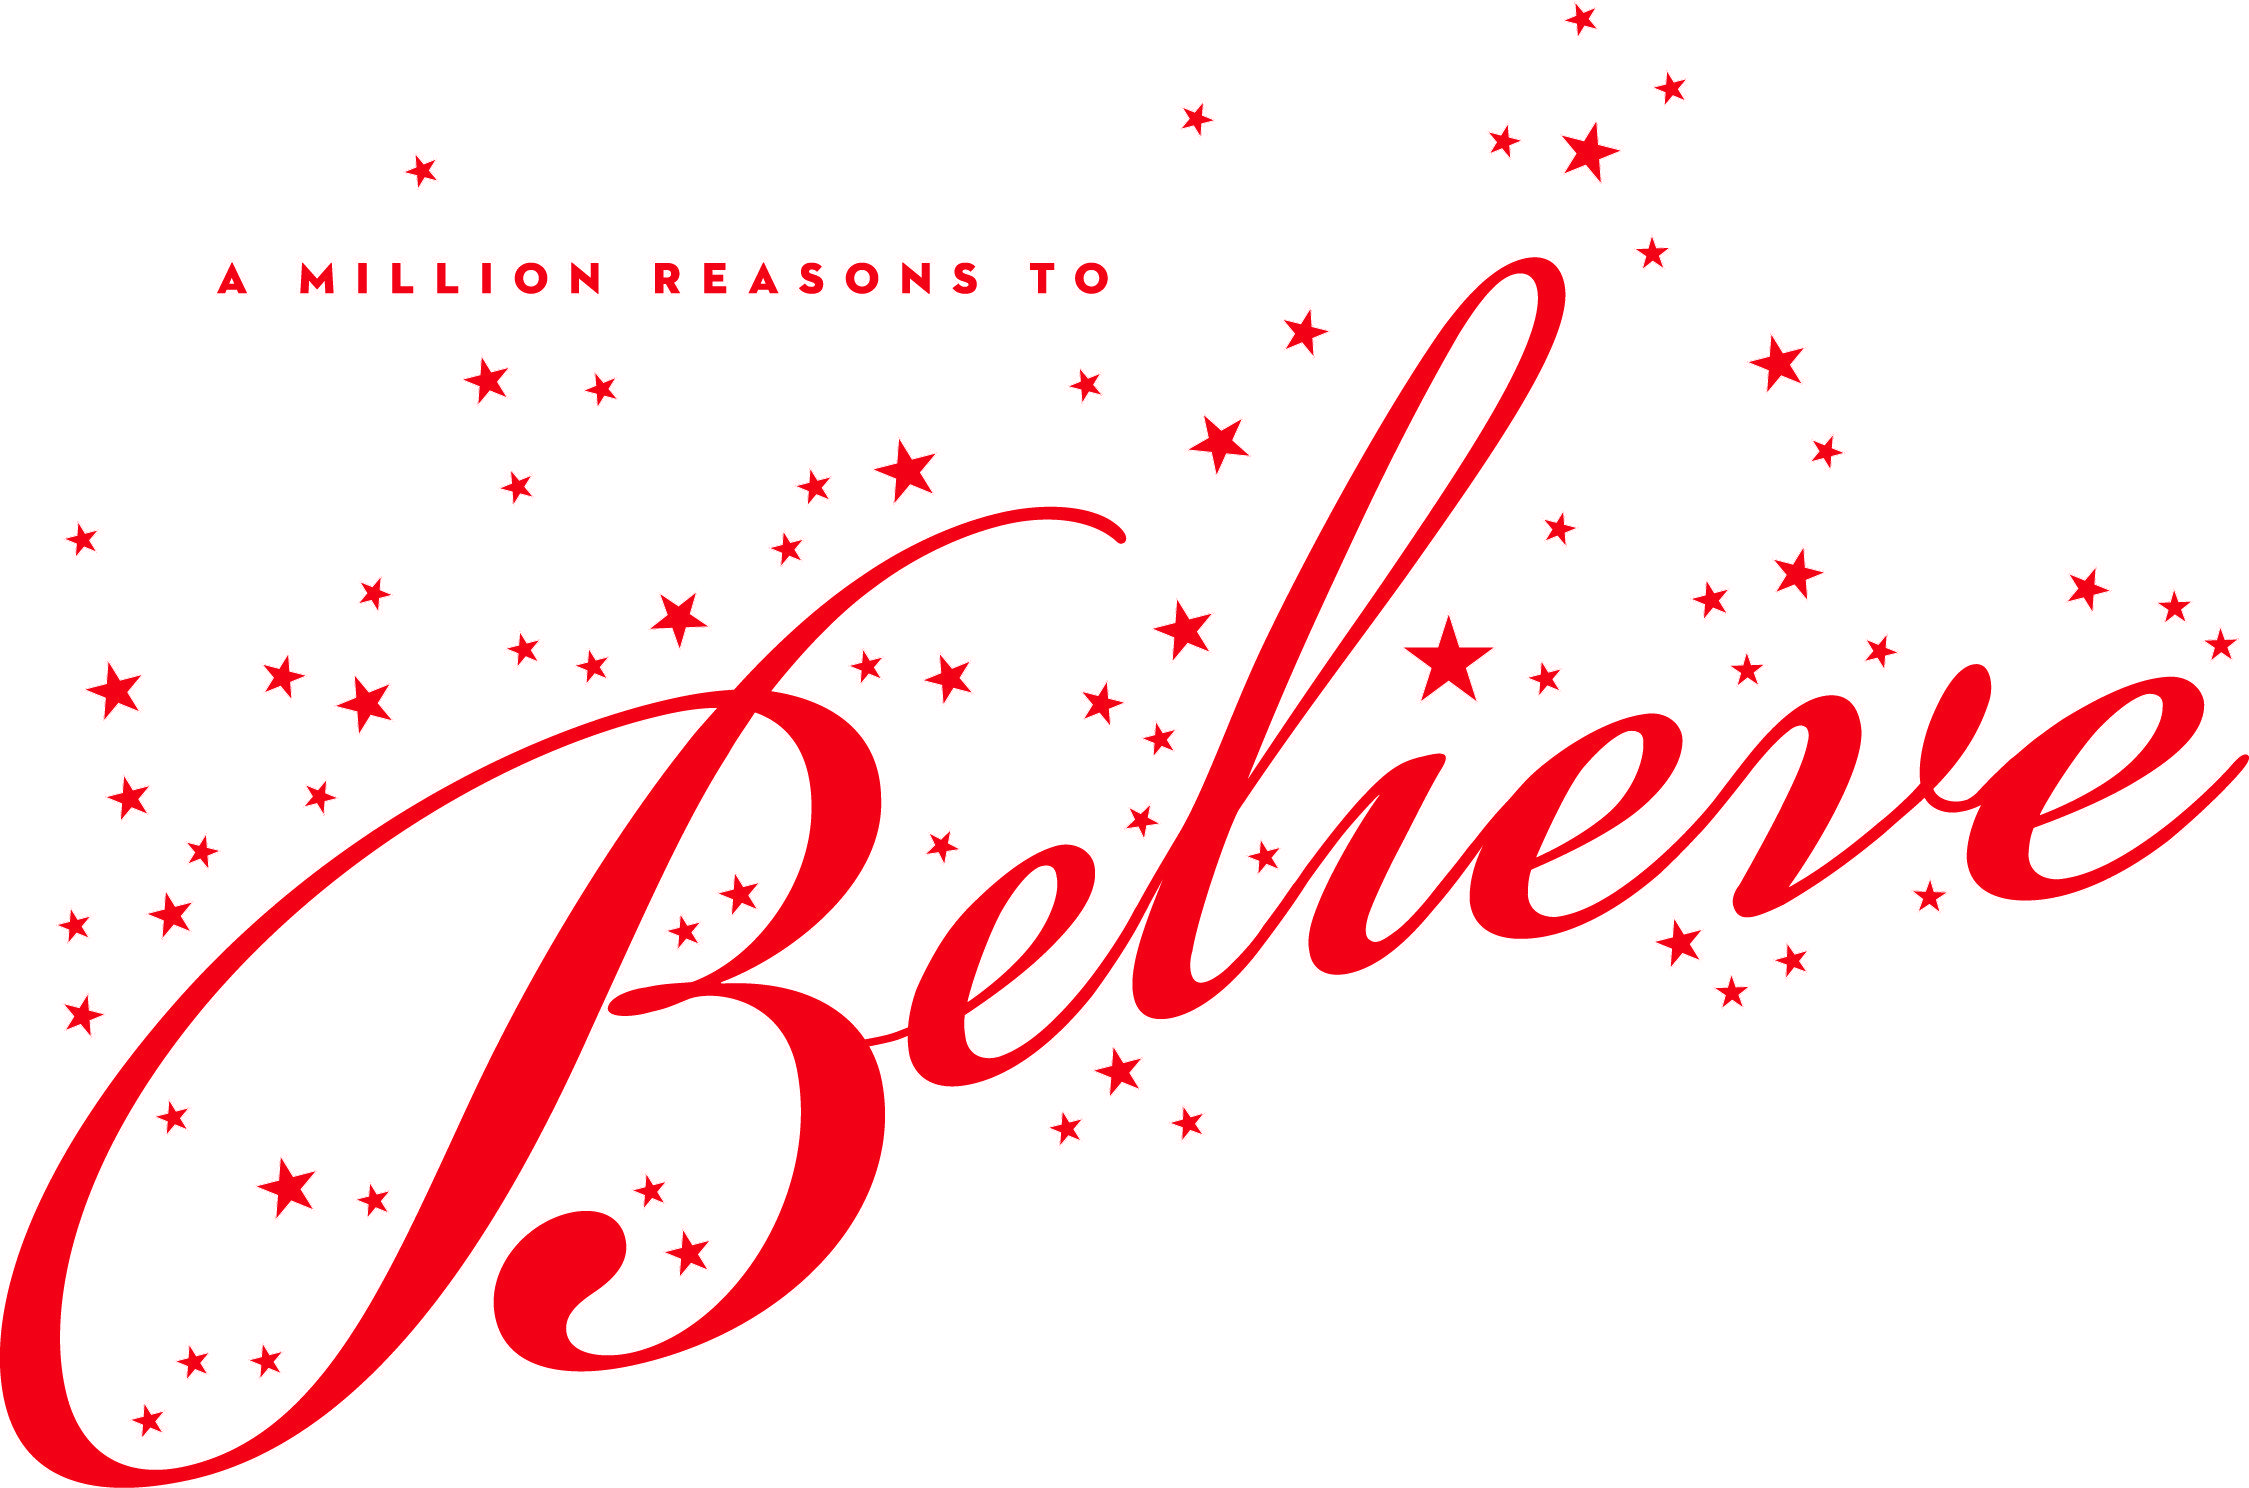 Believe Logo - A Million Reasons to Believe Logo - Family Friendly Cincinnati